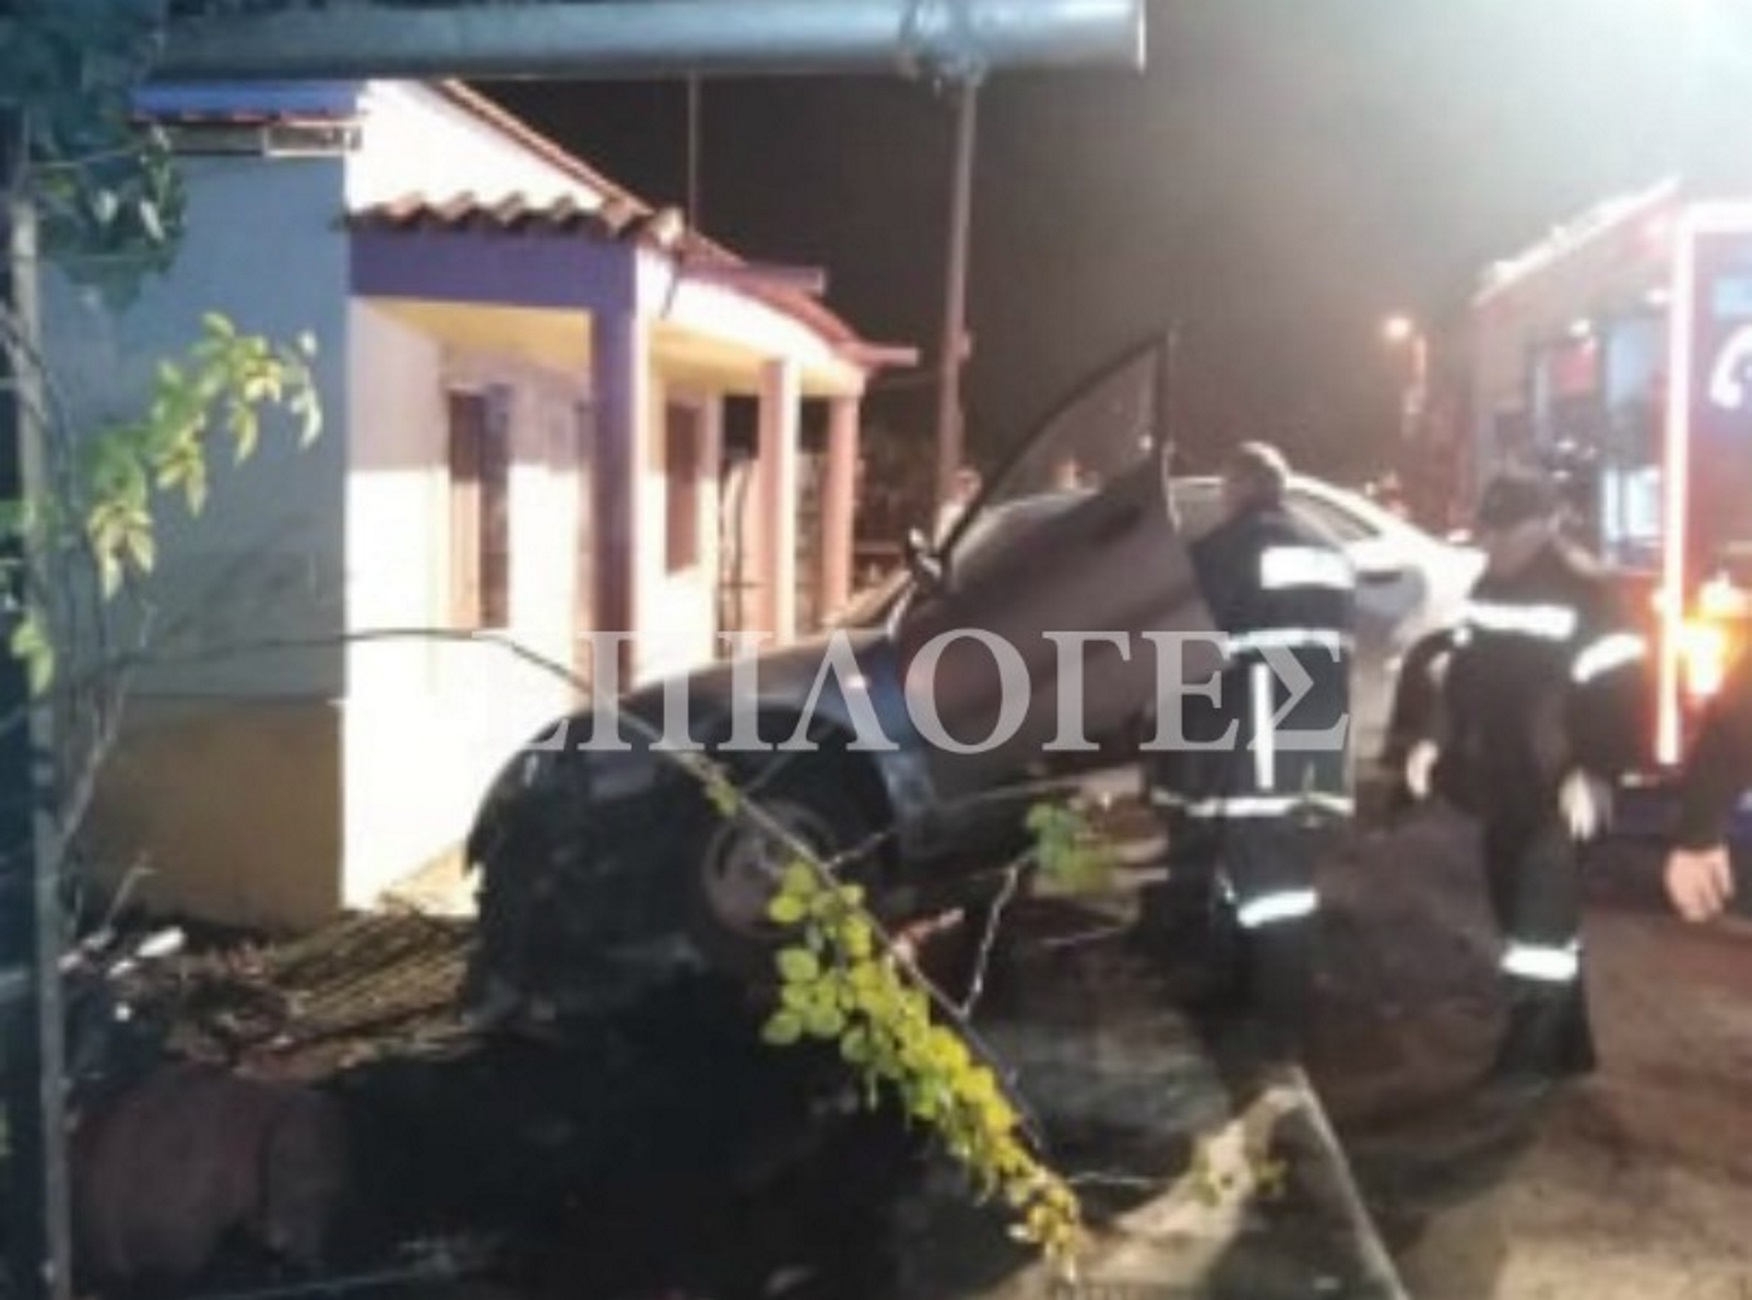 Σέρρες: Αυτοκίνητο παραλίγο να γκρεμίσει μονοκατοικία! Δύο τραυματίες και νέες εικόνες μετά το τροχαίο [video]